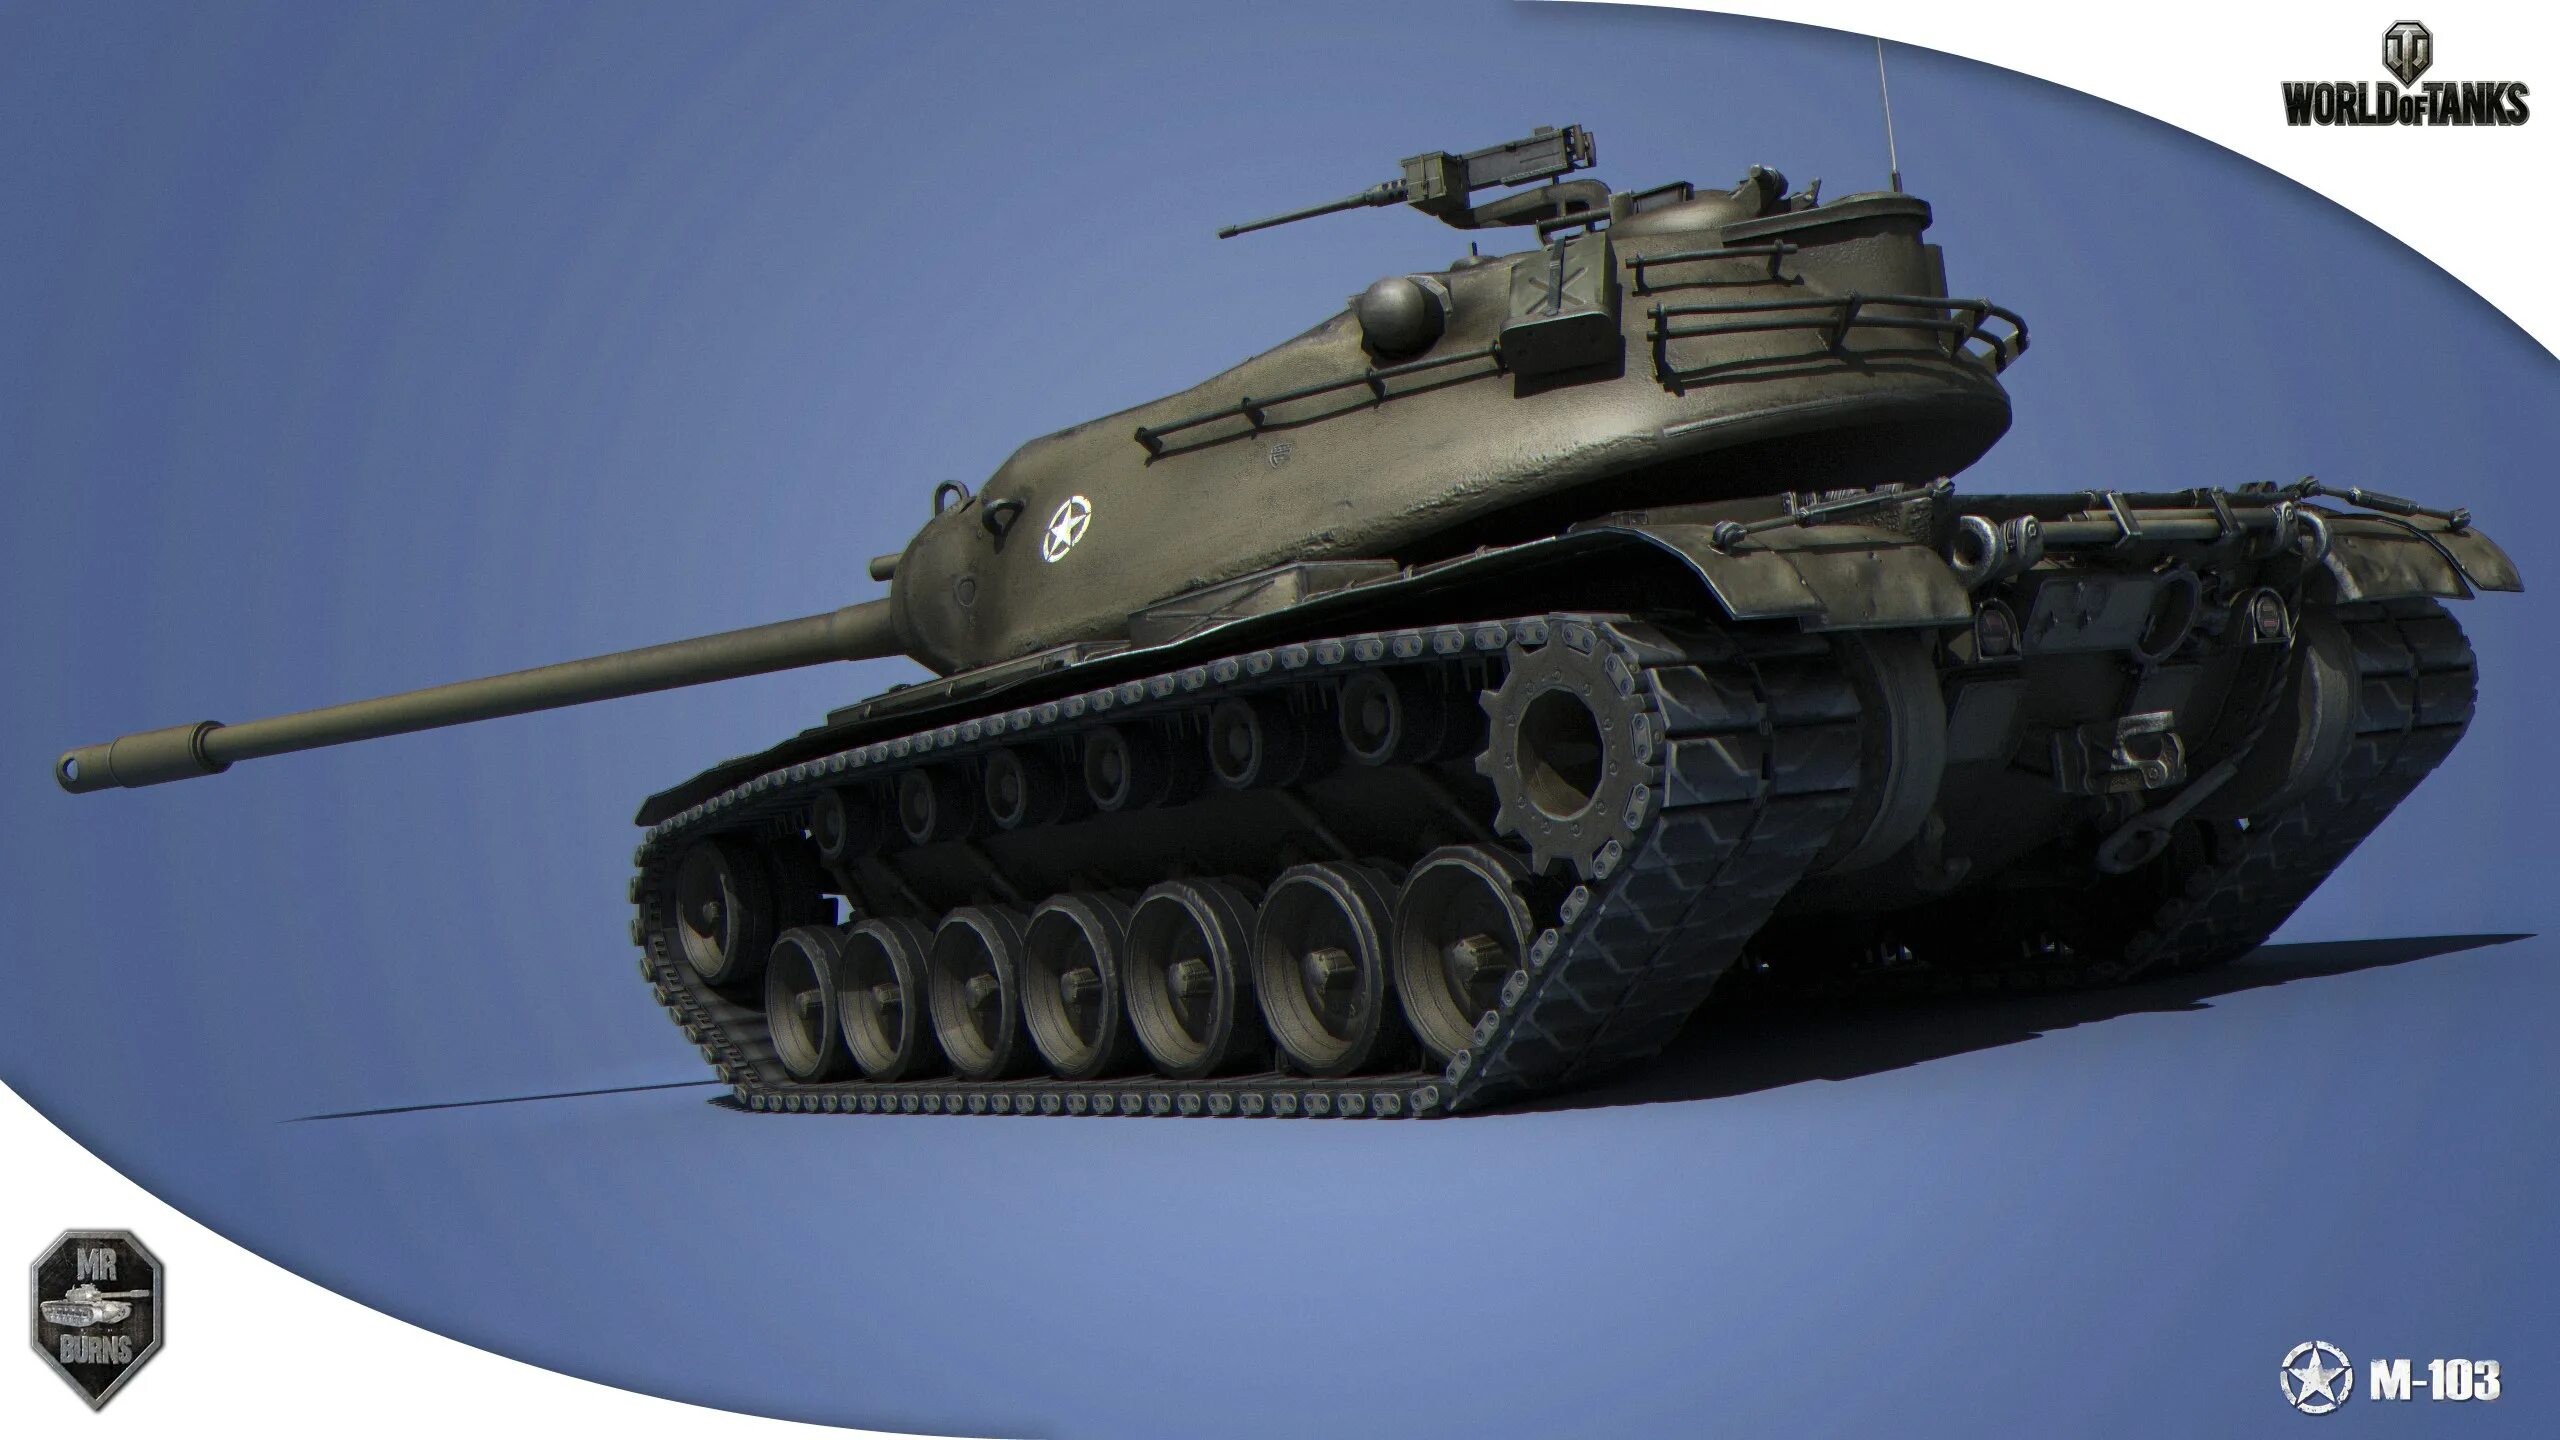 Mtall 103. Танк т-103 в World of Tanks. Танк м103 в World of Tanks. M103 танк WOT. M103.